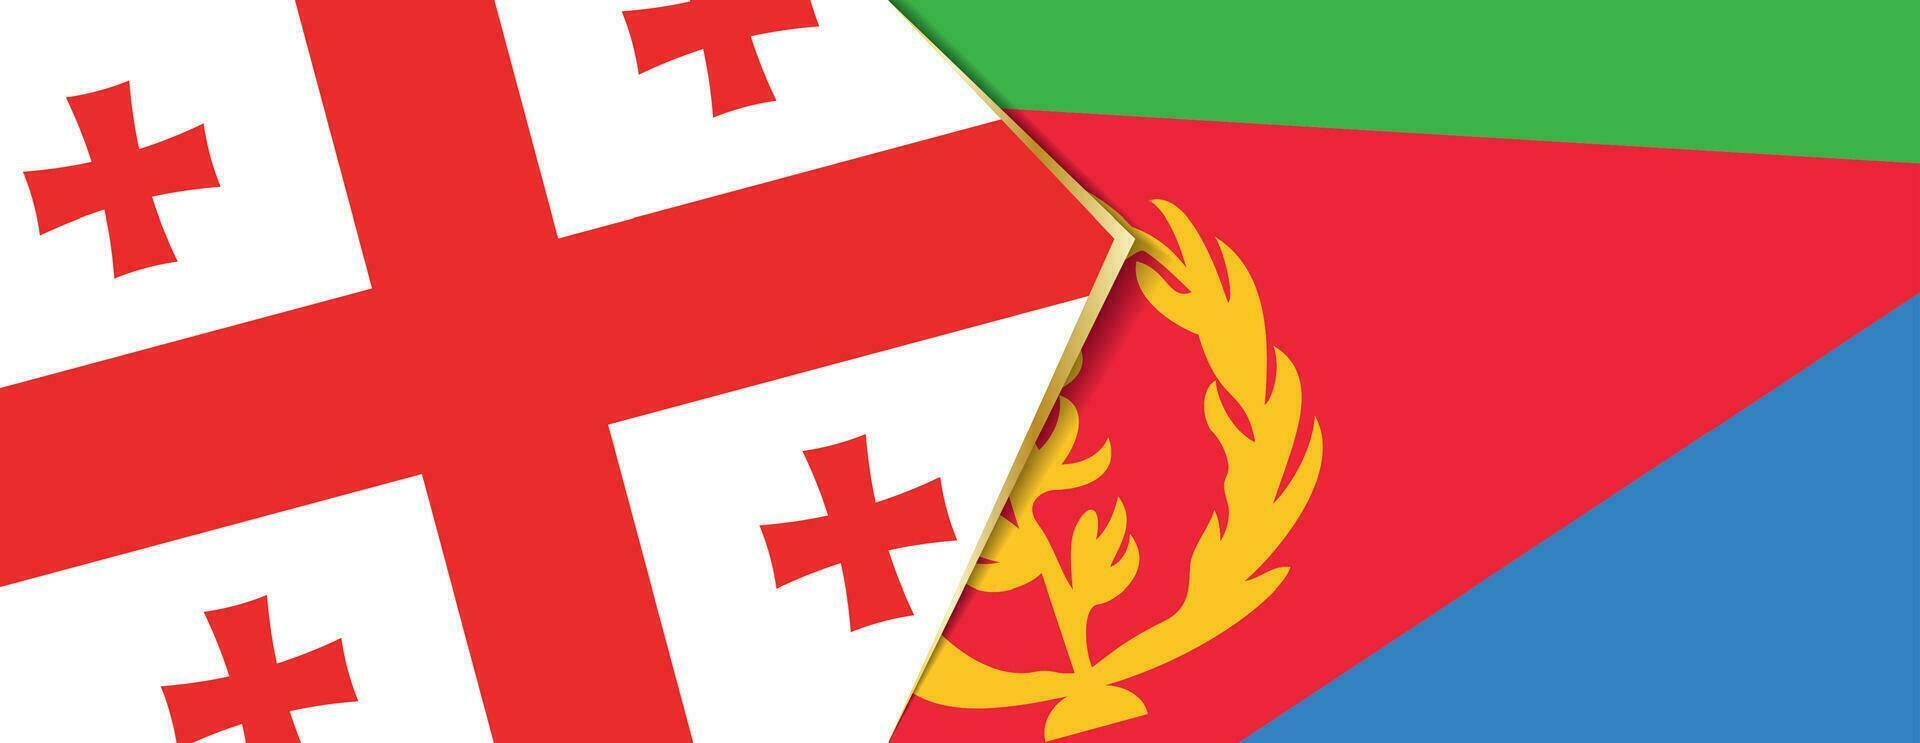 Georgia y eritrea banderas, dos vector banderas